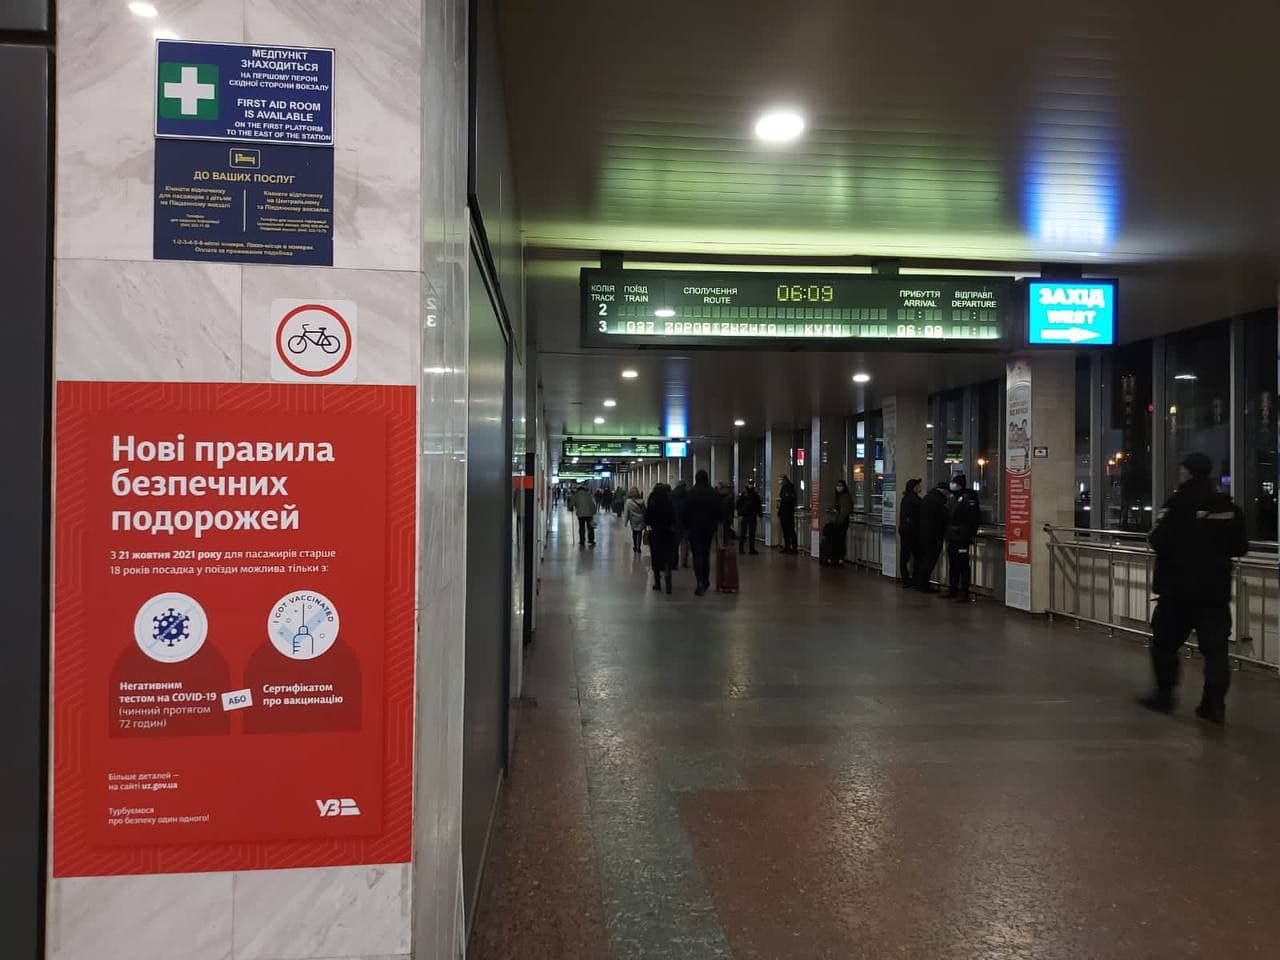 Карантин в транспорте усилили - какая ситуация на вокзалах, фото - Укрзализныця